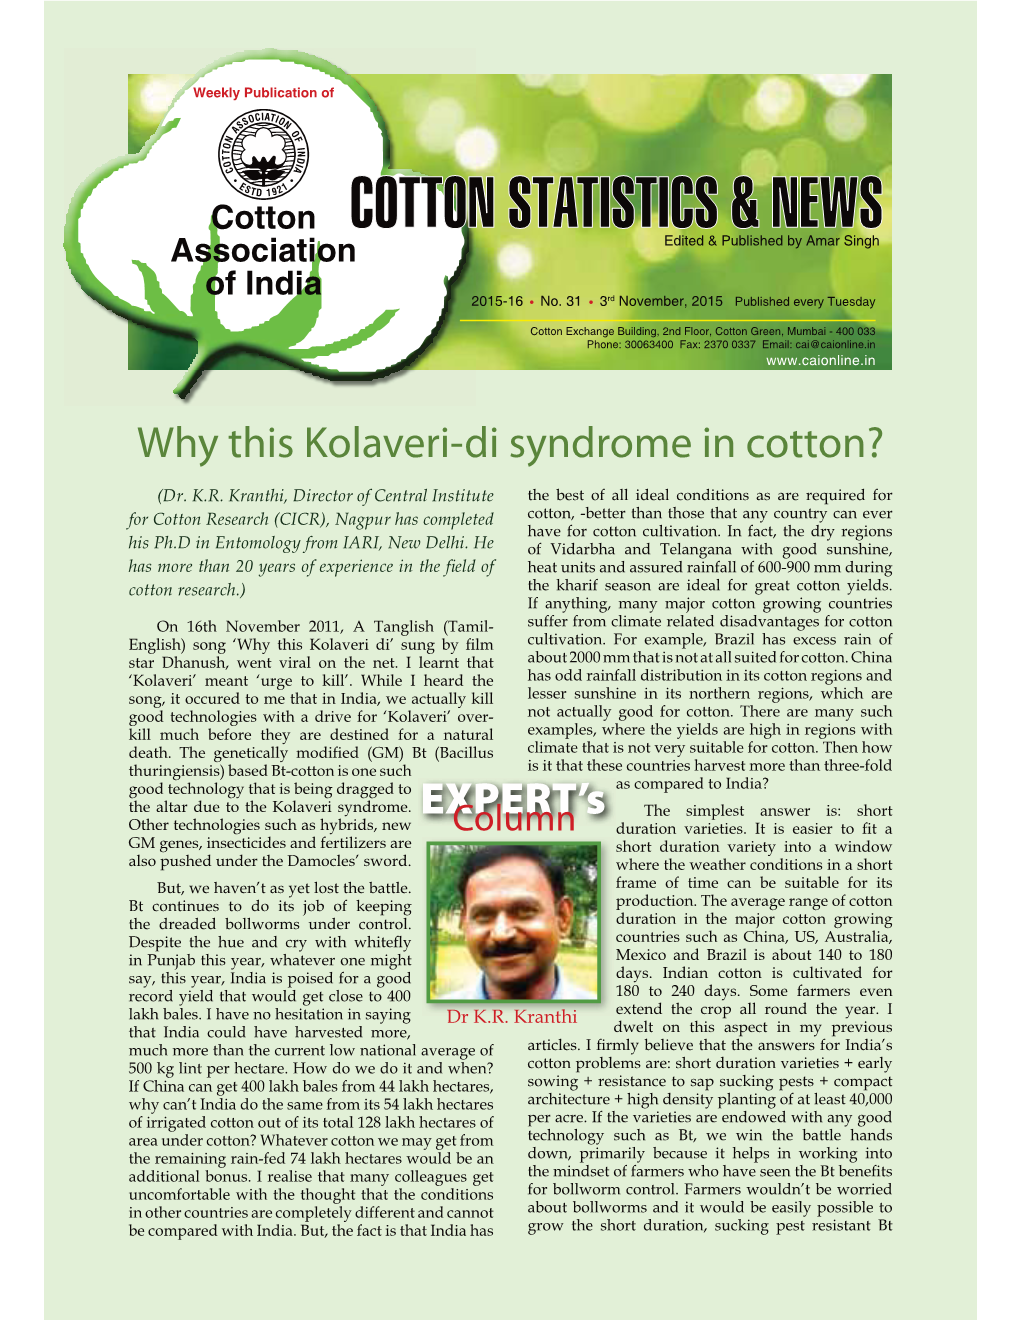 Why This Kolaveri-Di Syndrome in Cotton?